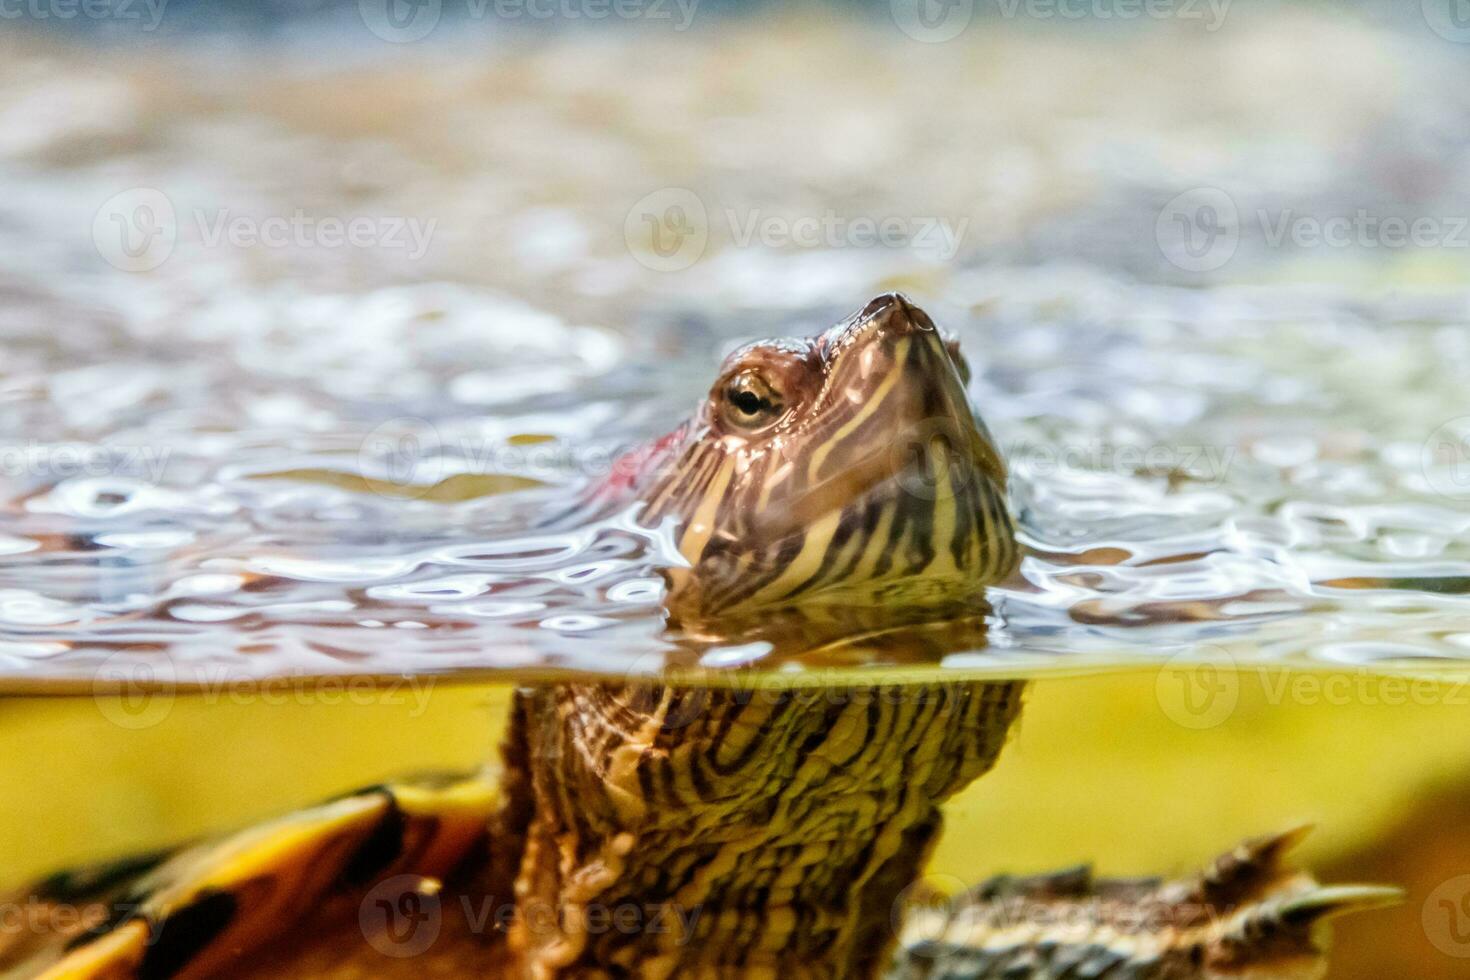 magnifique tortue nage dans le l'eau photo